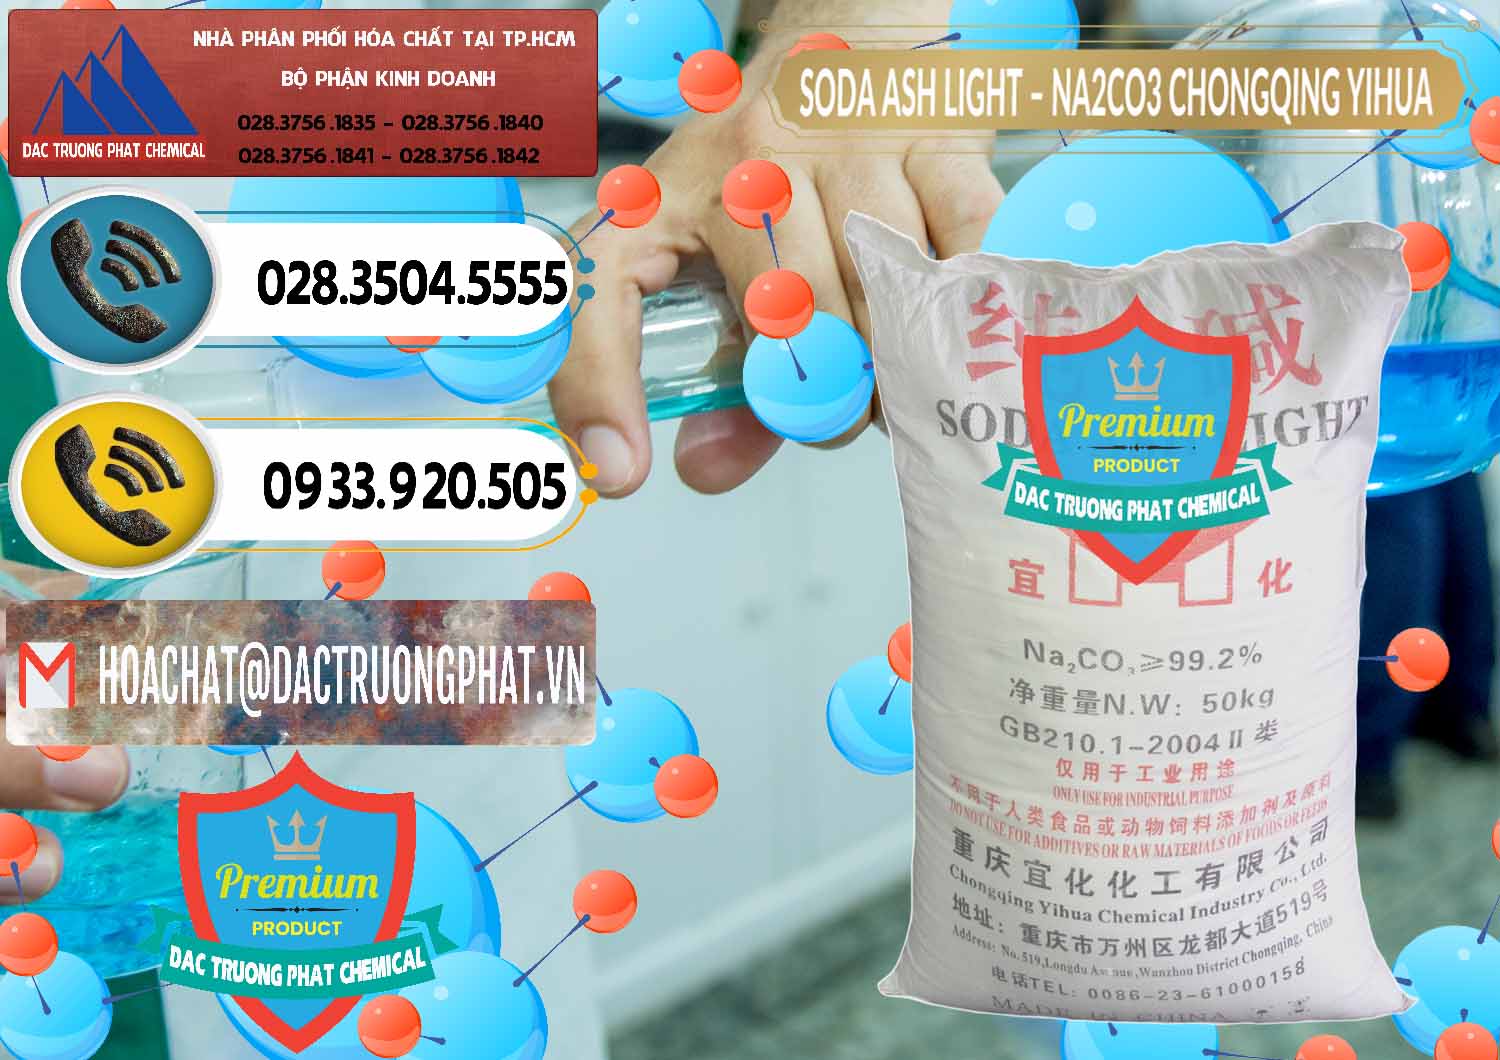 Đơn vị chuyên bán và phân phối Soda Ash Light - NA2CO3 Chongqing Yihua Trung Quốc China - 0129 - Chuyên cung cấp ( nhập khẩu ) hóa chất tại TP.HCM - hoachatdetnhuom.vn